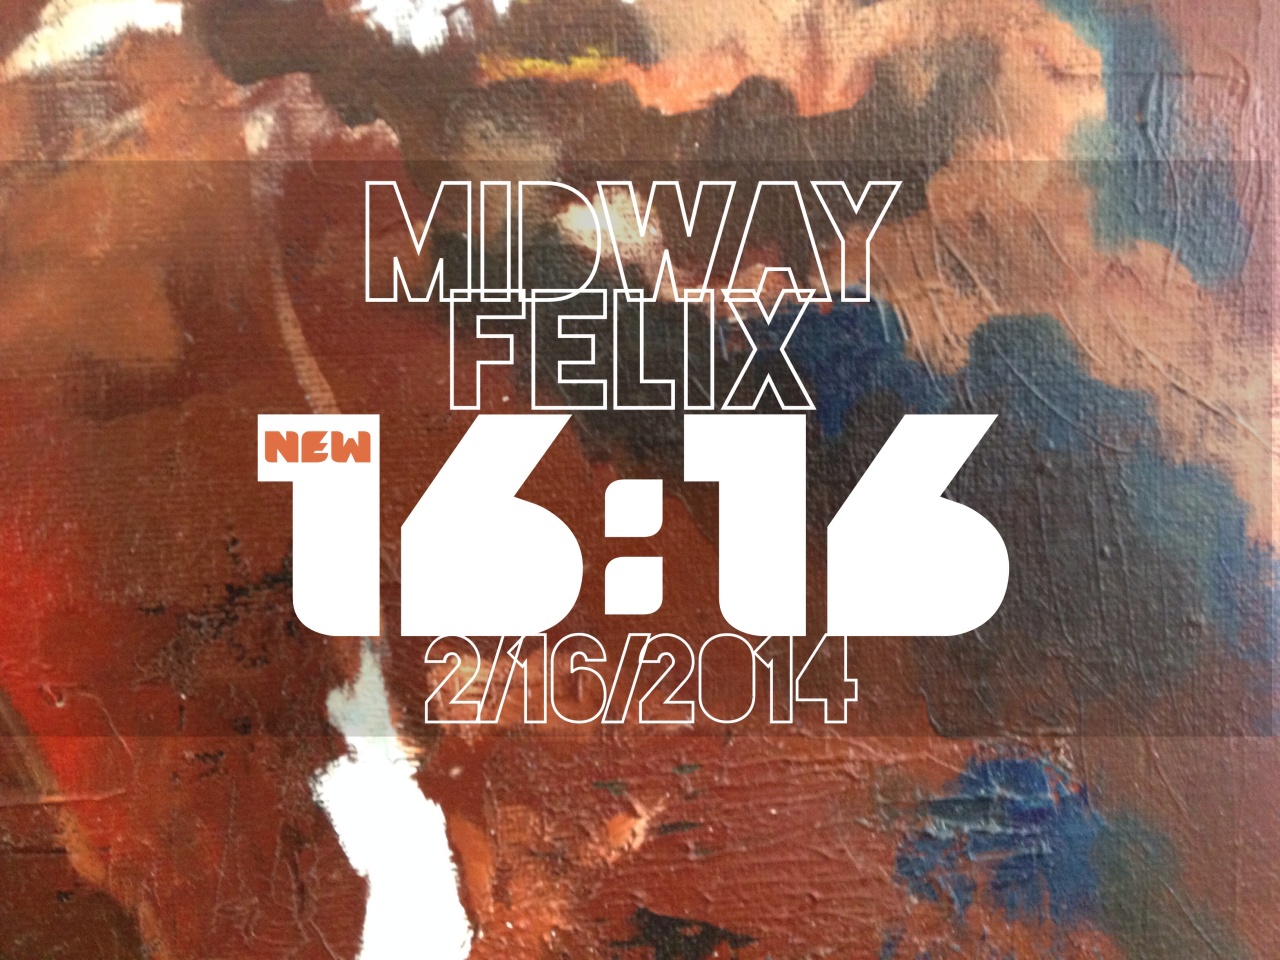 MidwayFelix1616